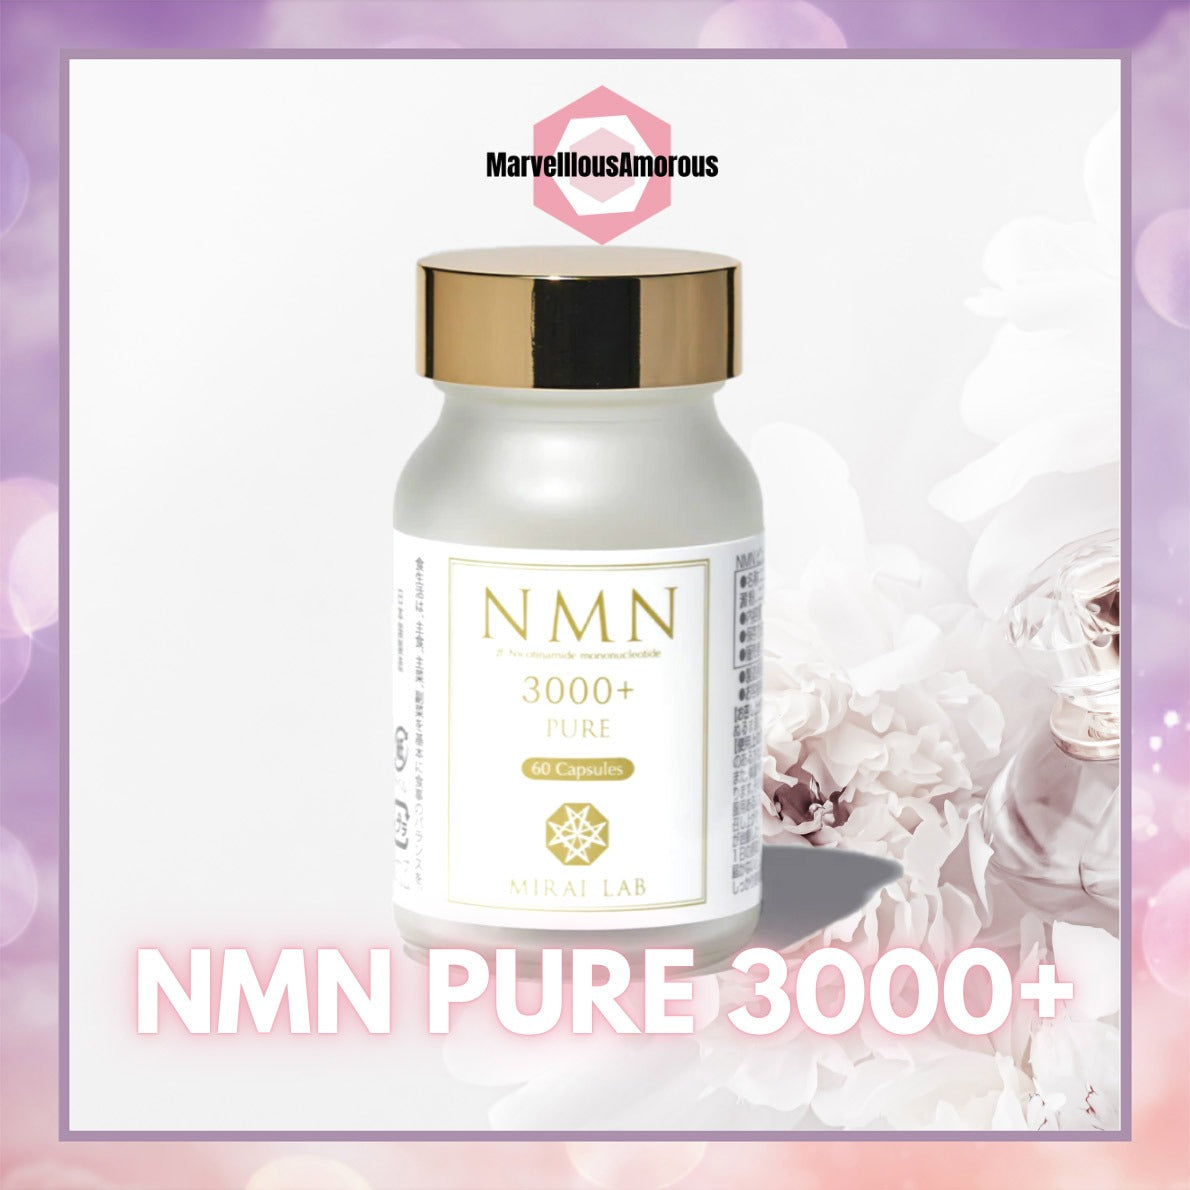 NMN PURE 3000+